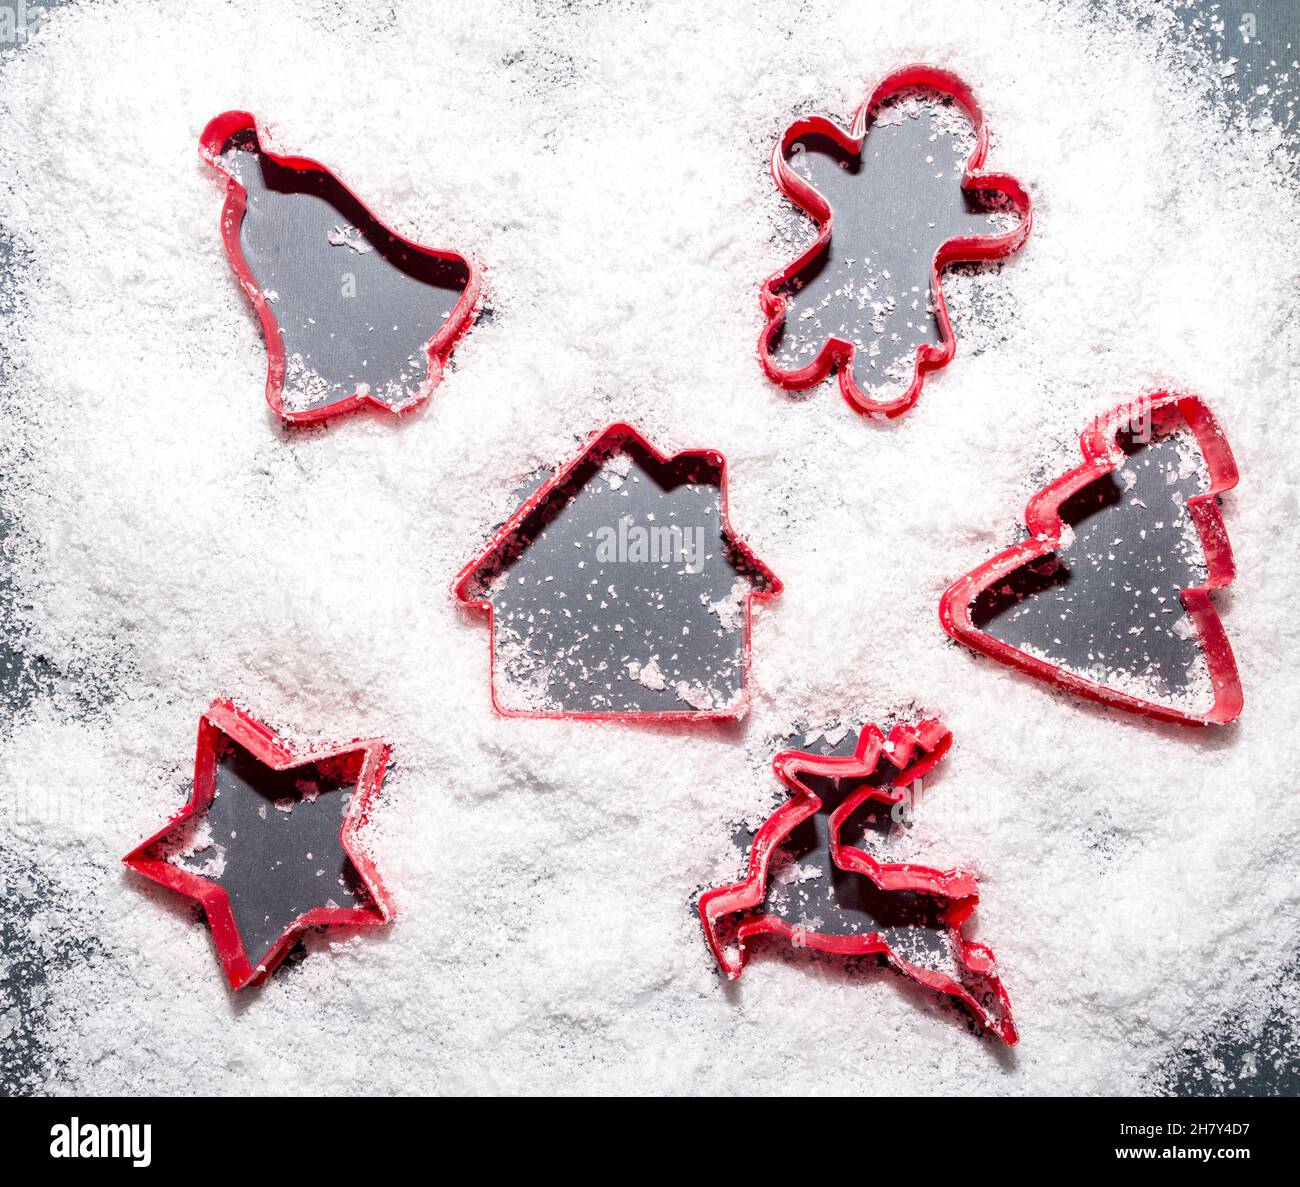 Rote Kuchenformen, die Silhouetten und Schilder im Schnee bilden. Weihnachts- und Neujahrsidee. Flach liegend, Draufsicht. Minimales abstraktes Winterurlaubs-Konzept. Stockfoto